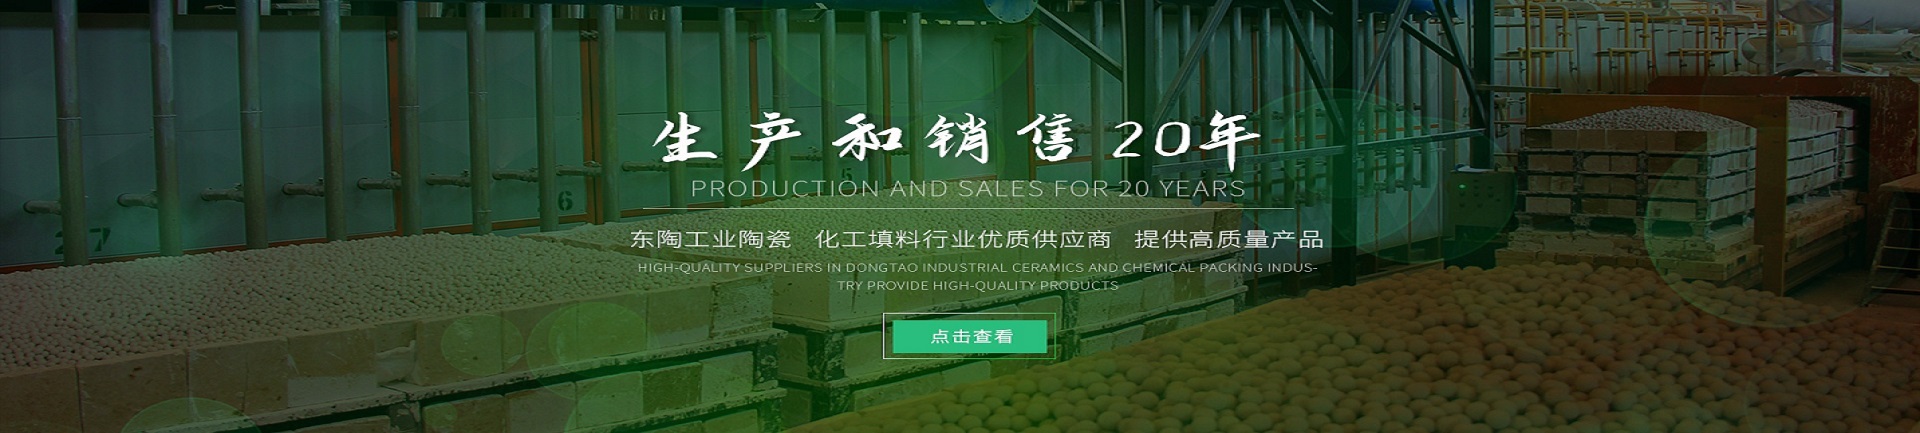 萍鄉東陶陶瓷-化工填料行業優質供應商